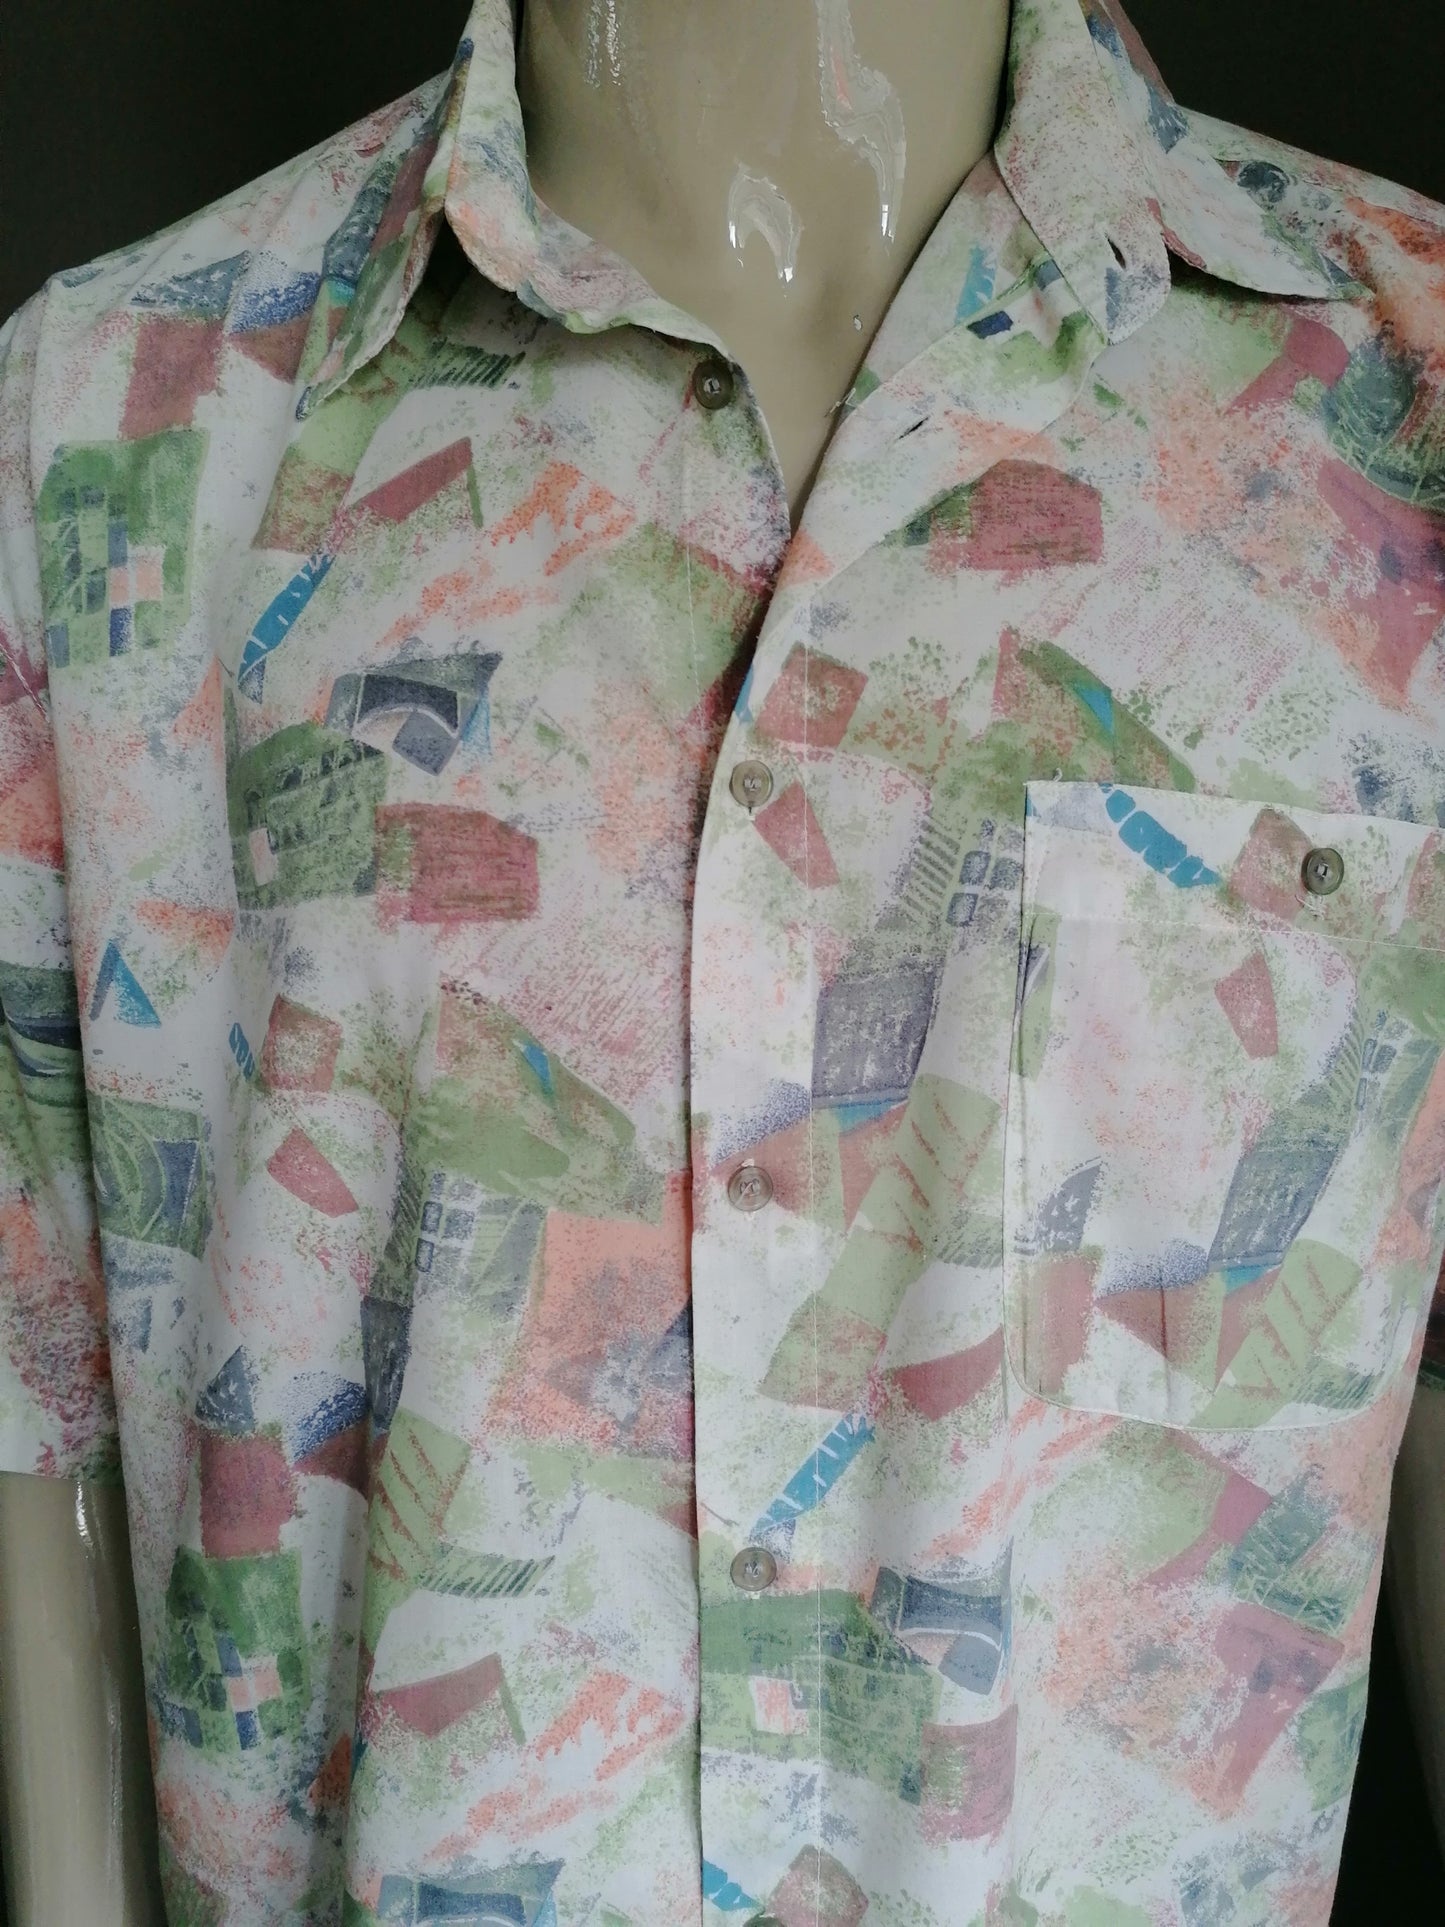 Shelt de chemise à manche courte des années 90. Impression beige verte rose. Taille xl / xxl / 2xl.